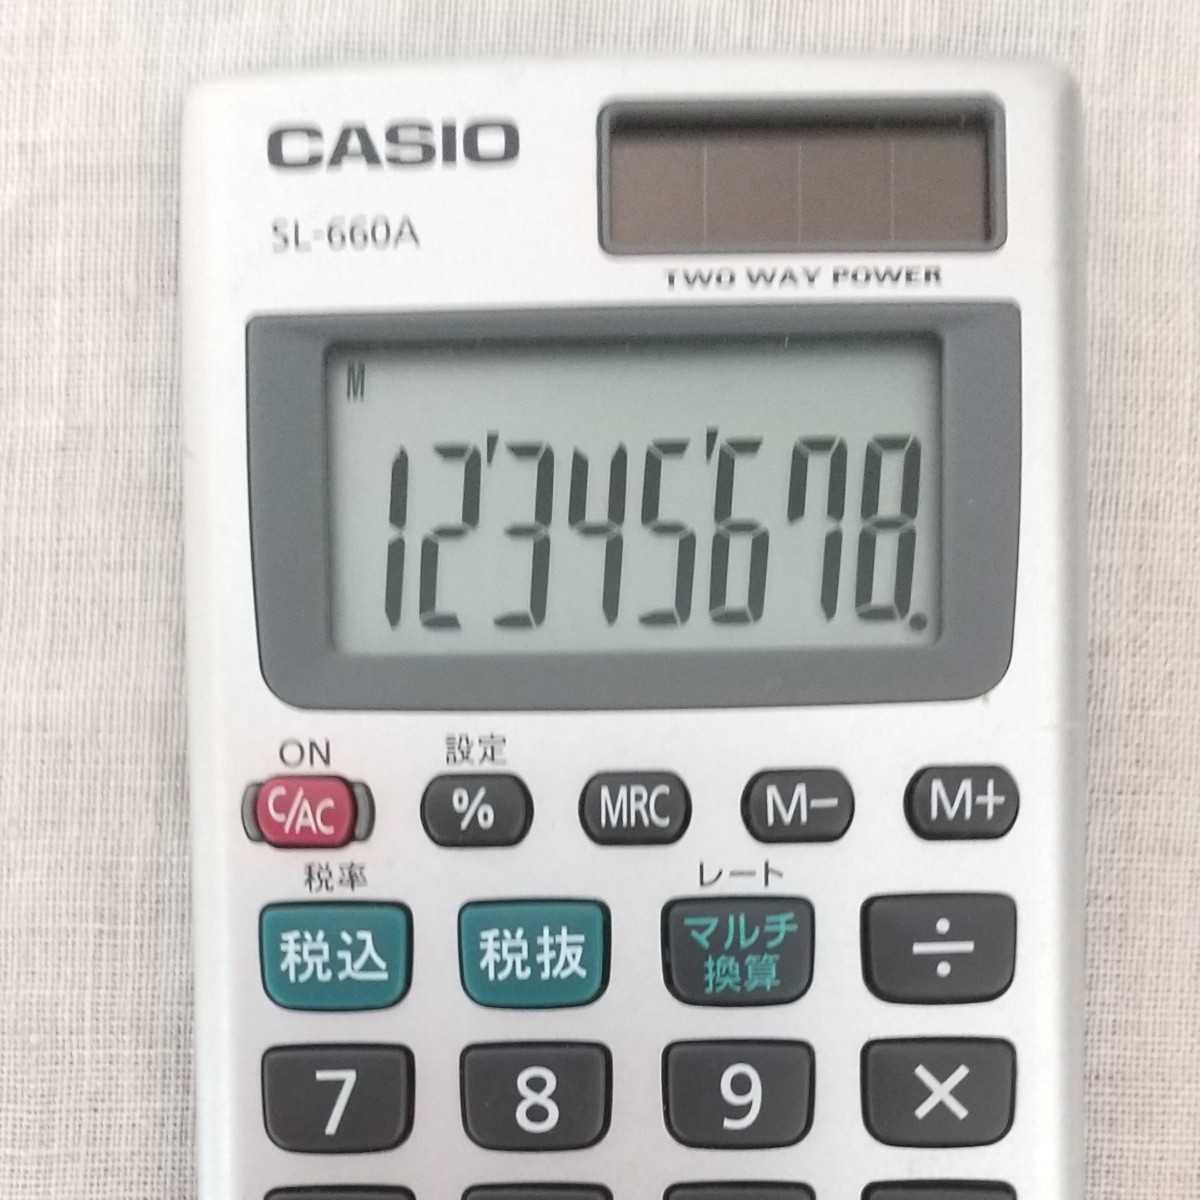 CASIO カシオ パーソナル電卓 SL-660A カードタイプ8桁